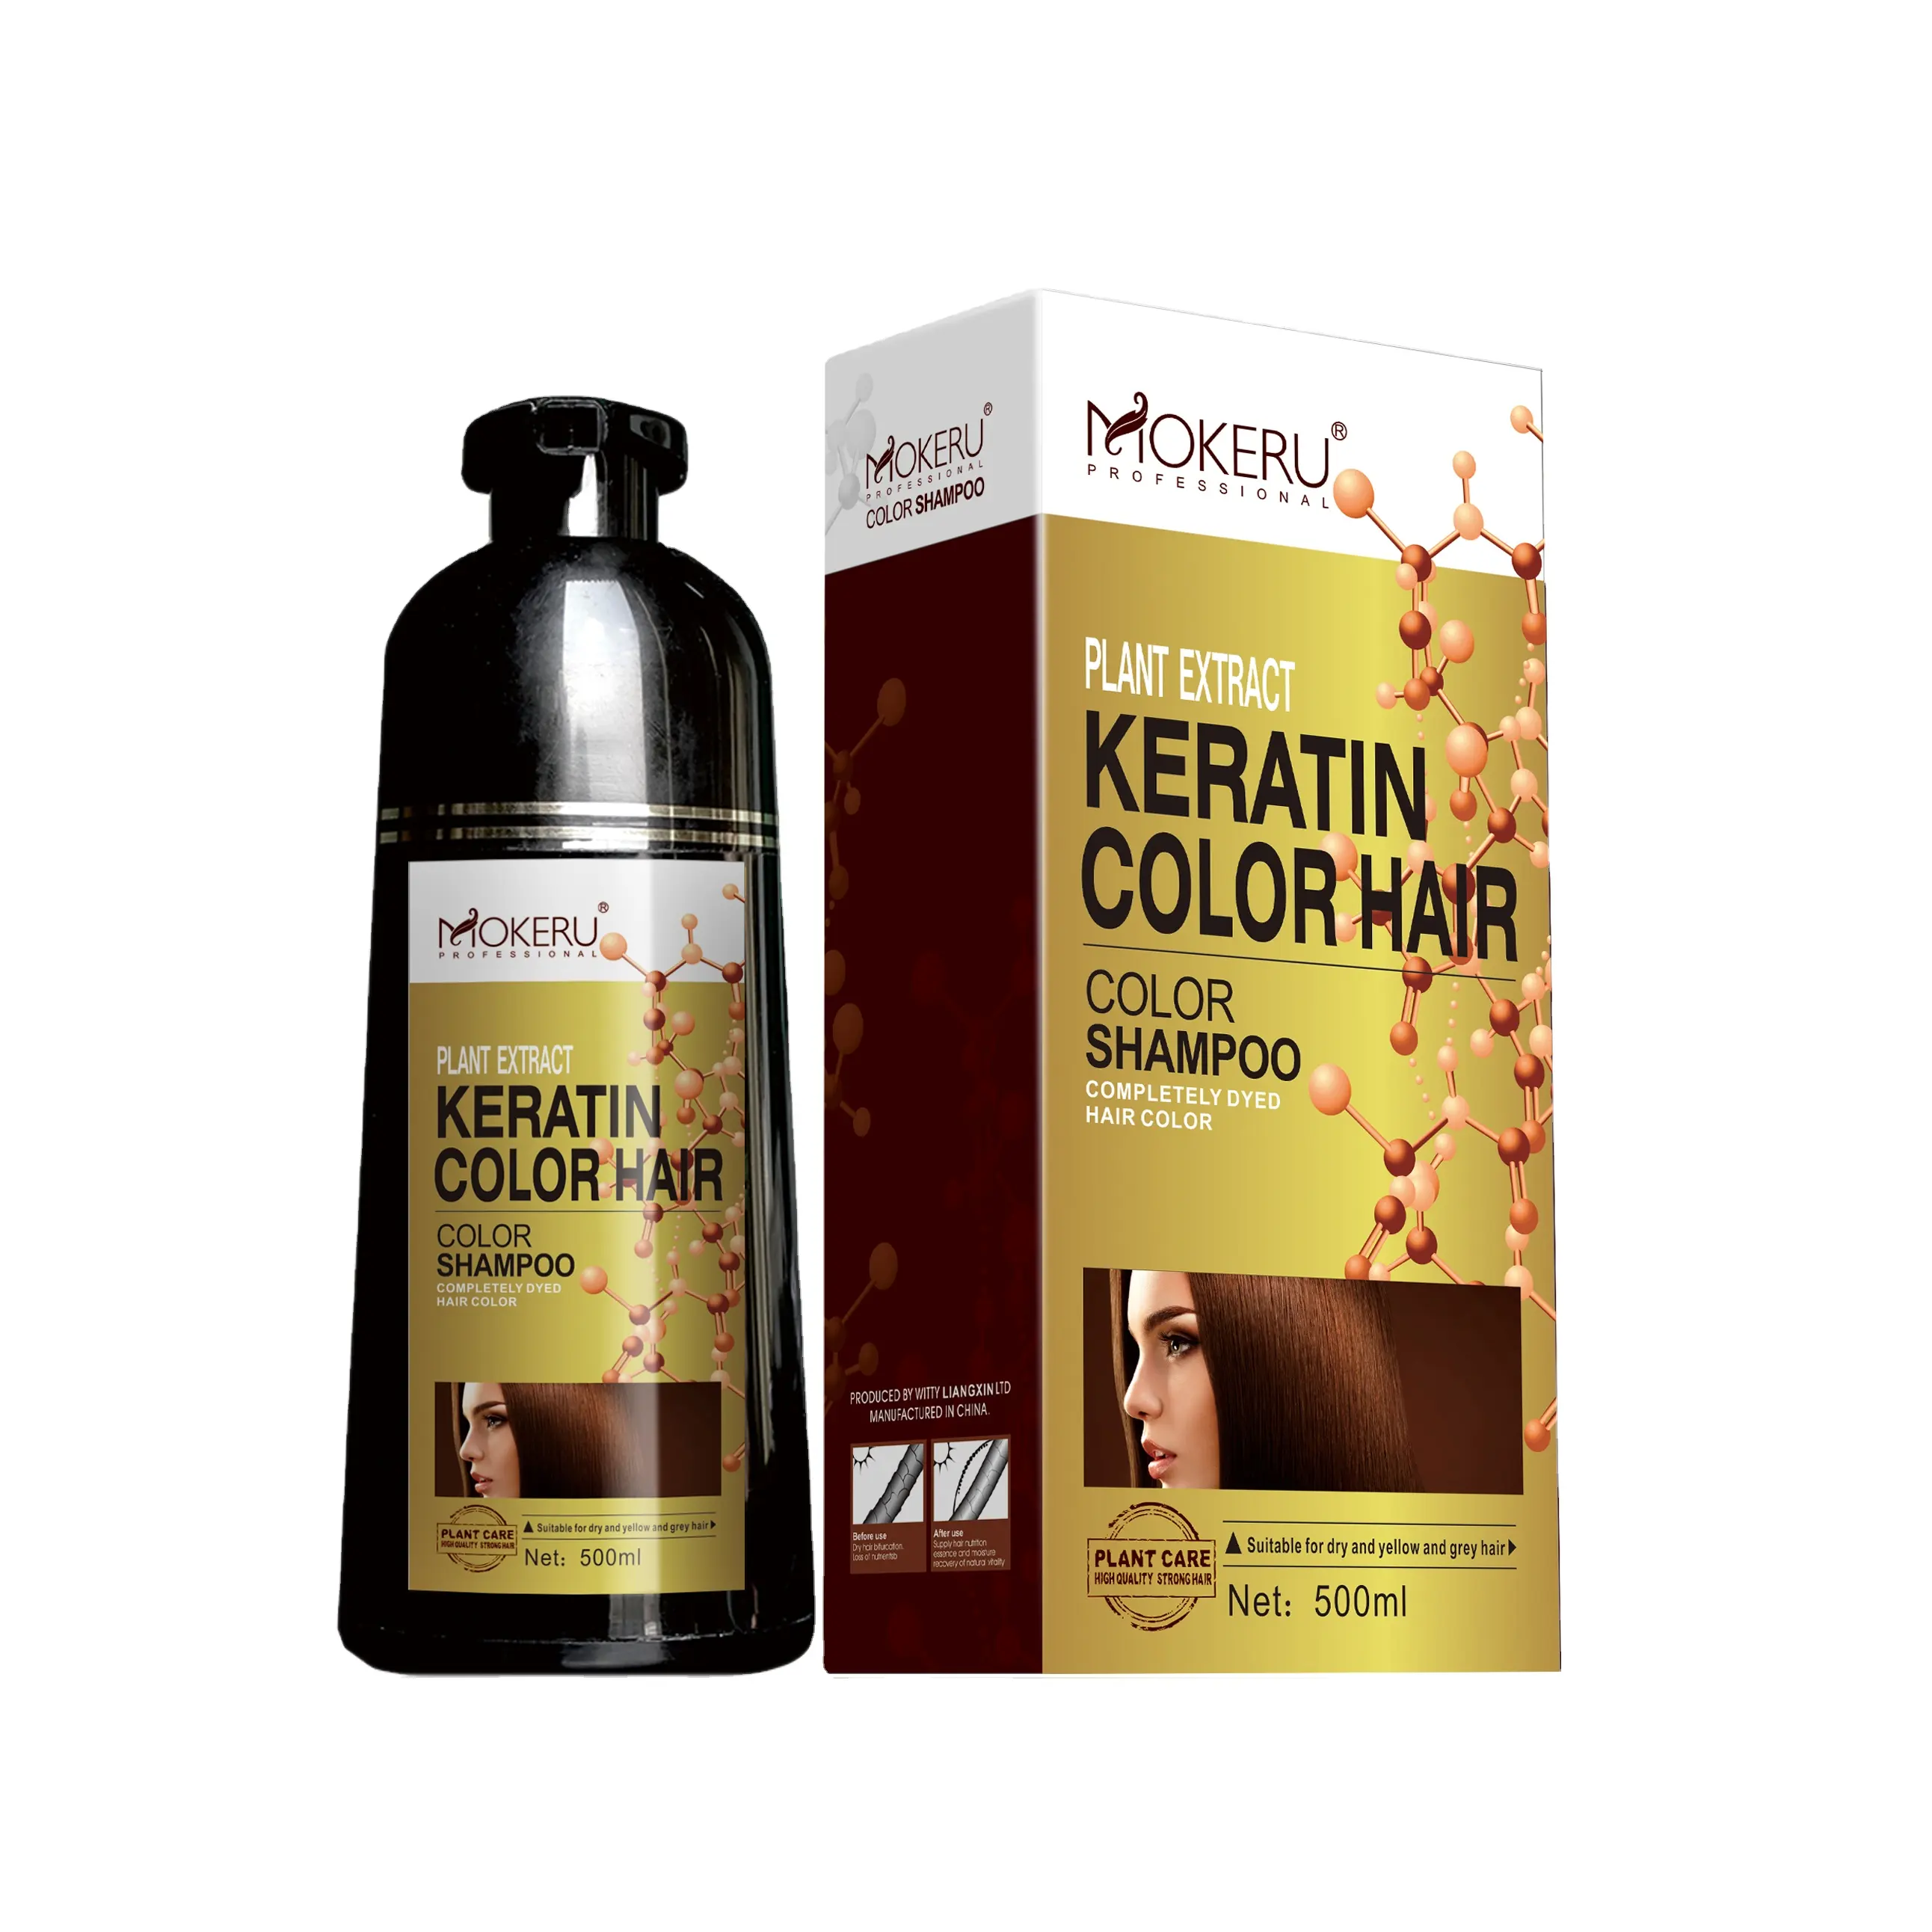 MOKERU — shampoing colorant à base de kératine brun cerise, 500ml, faible consommation, traitement pour les cheveux, couleur, prix de gros, livraison gratuite